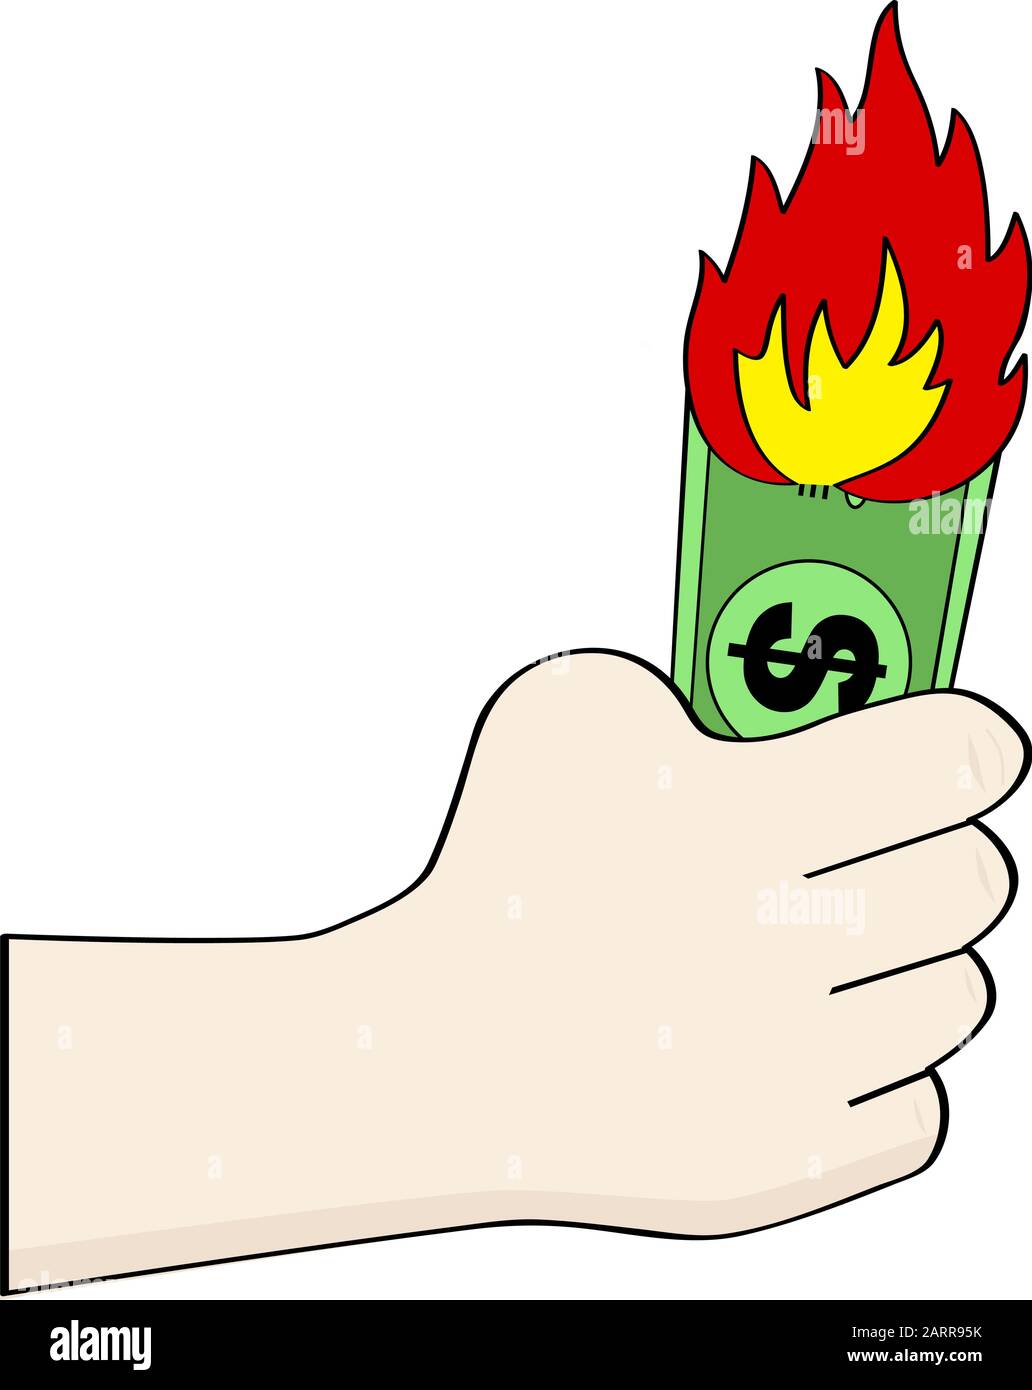 Cartoon illustration showing a hand holding a burning dollar bill Stock Vector